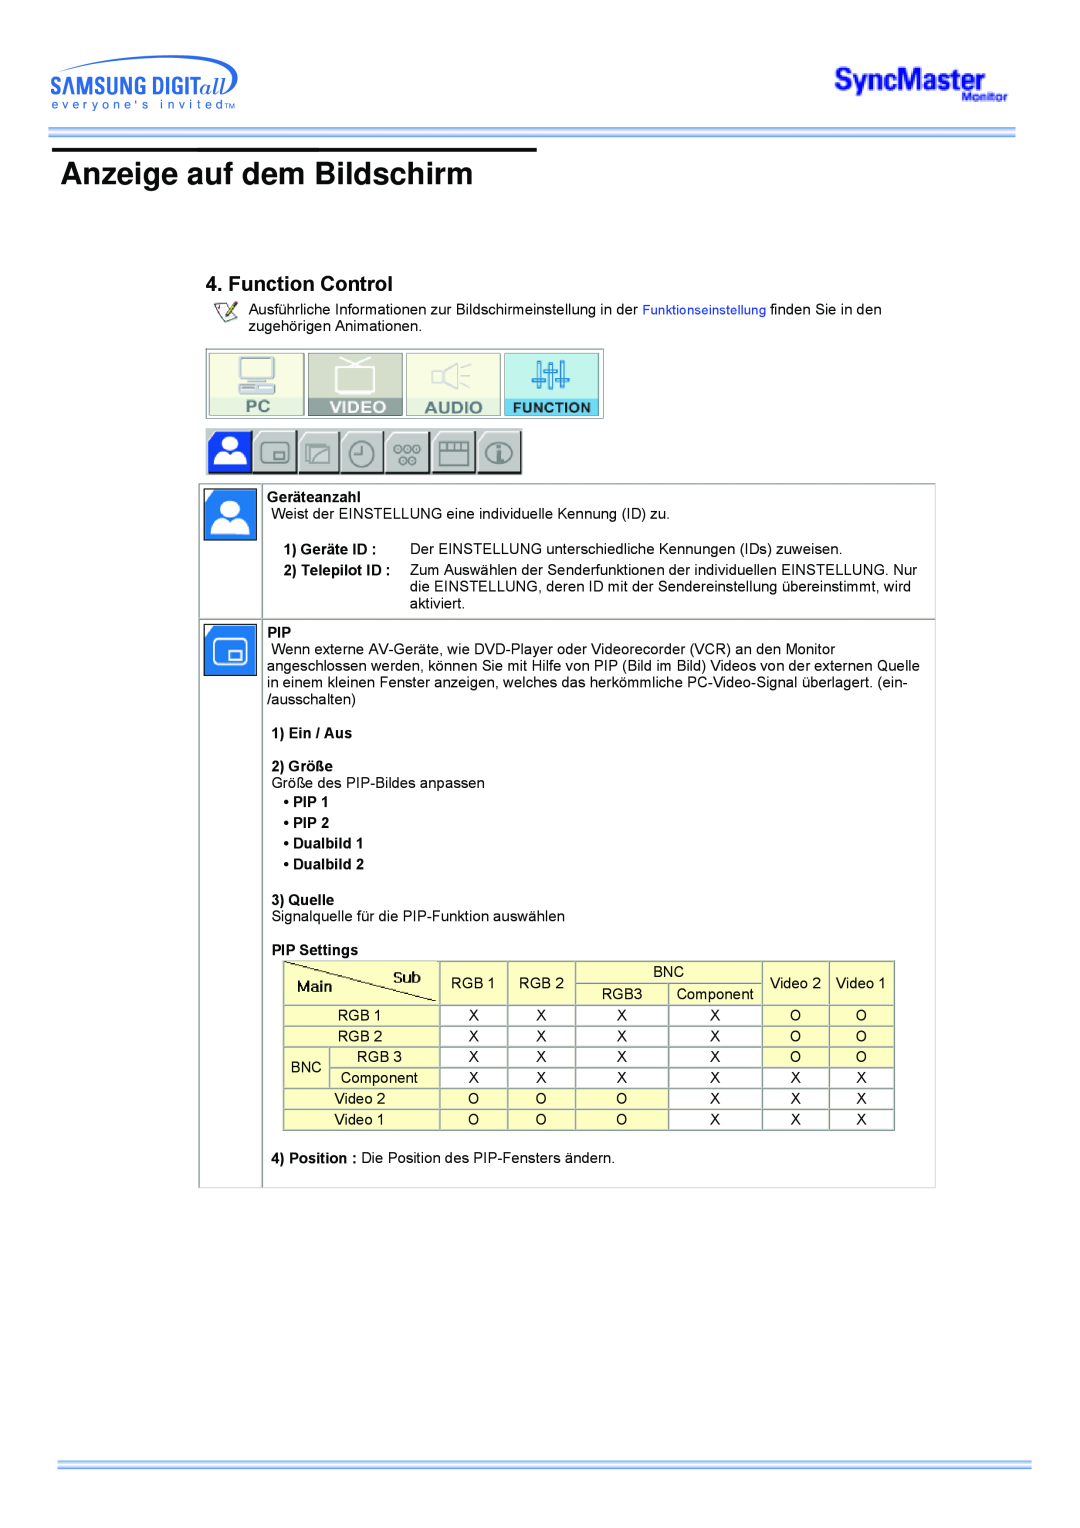 Samsung CK40PSNBG/EDC manual Function Control, Anzeige auf dem Bildschirm, Geräteanzahl, Ein / Aus 2 Größe, PIP Settings 